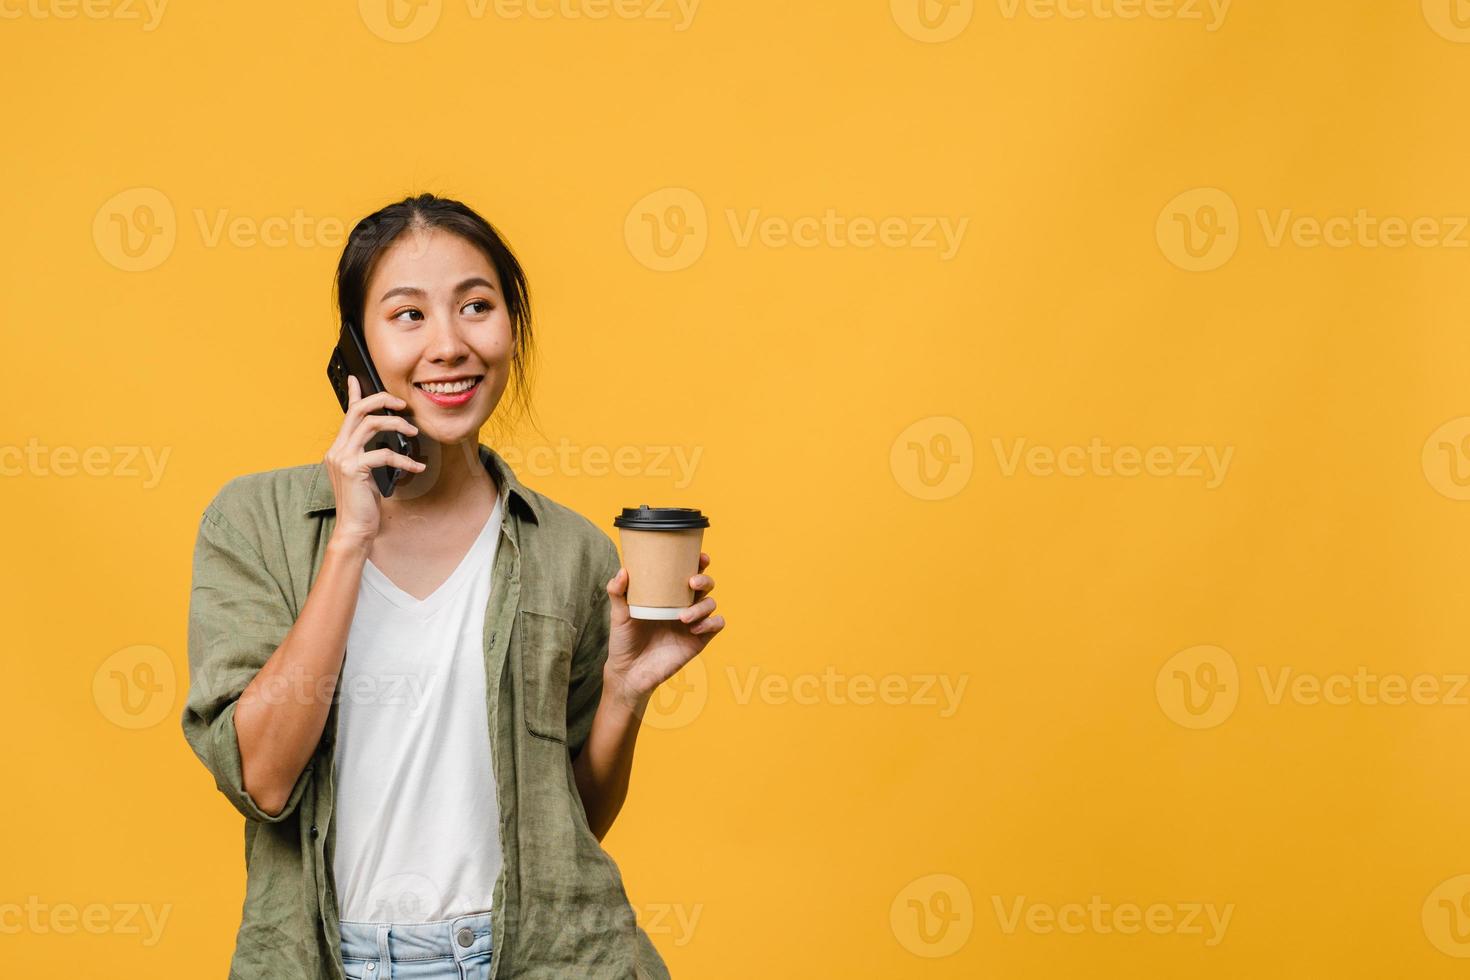 jonge aziatische dame praat via de telefoon en houdt een koffiekopje vast met een positieve uitdrukking, glimlach breed, gekleed in een casual doek en voelt zich gelukkig en staat geïsoleerd op een gele achtergrond. gezichtsuitdrukking concept. foto